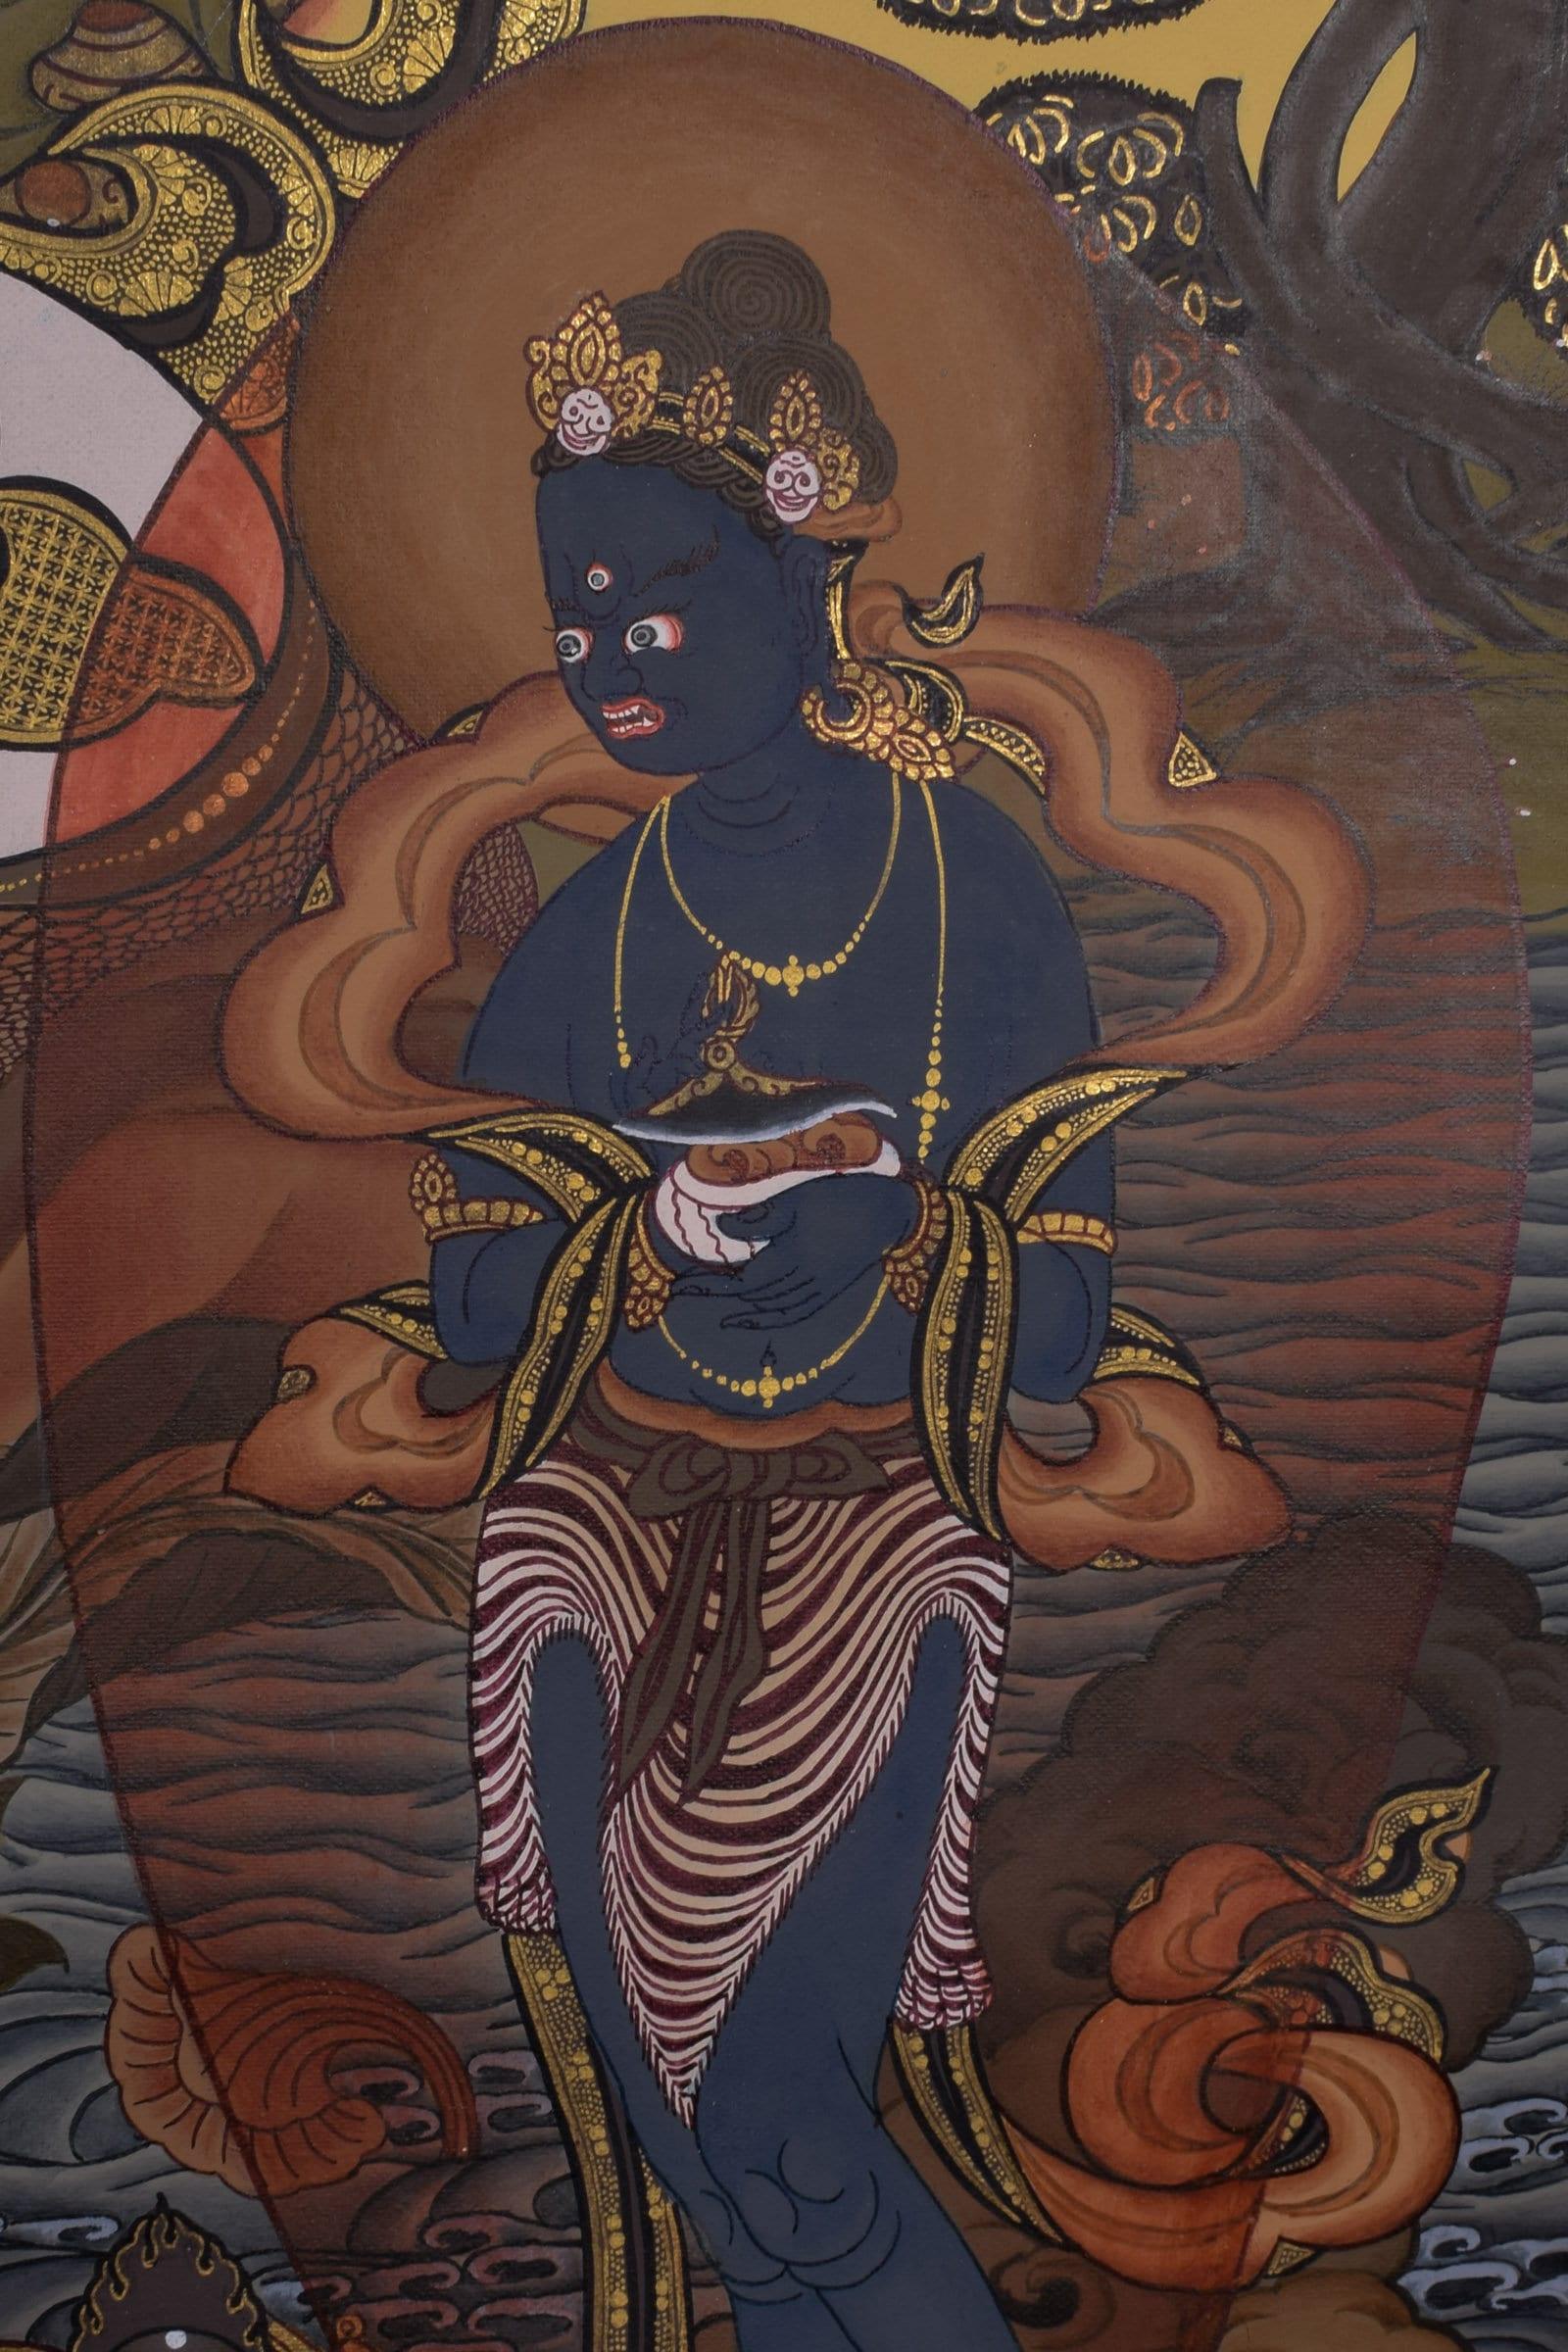 White Tara Thangka Art - Himalayas Shop